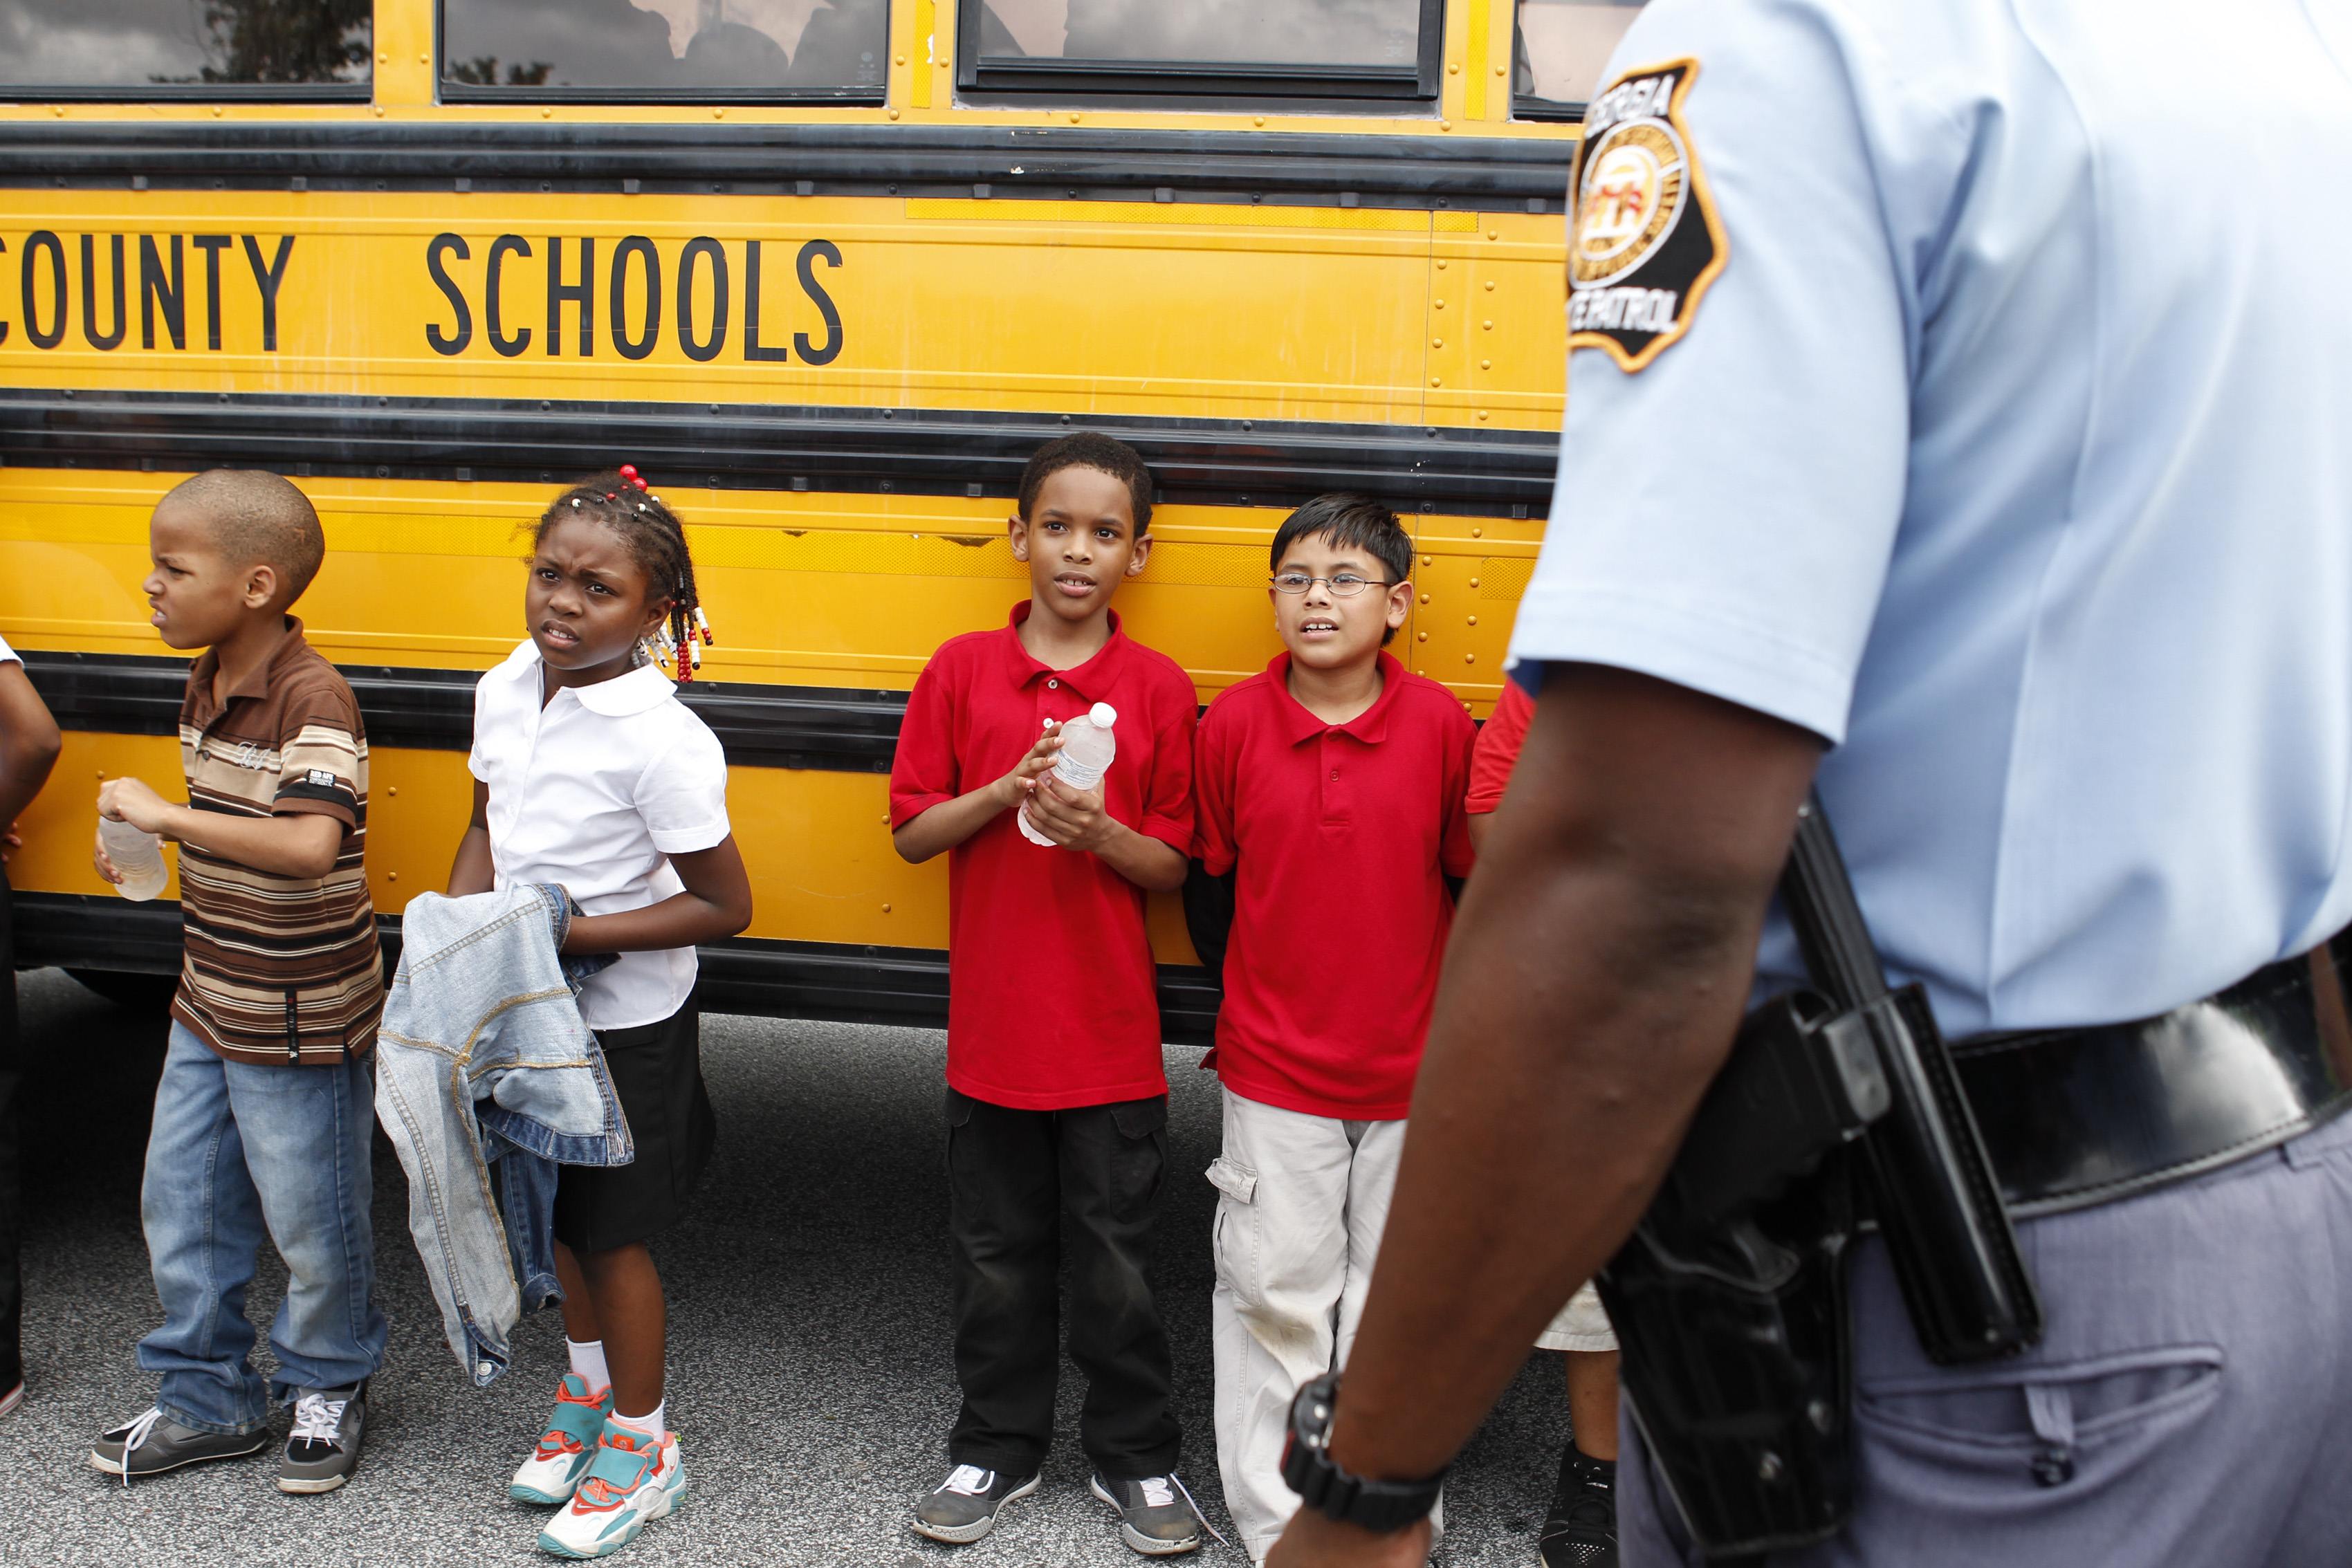 Gunman in US school surrenders, no one hurt